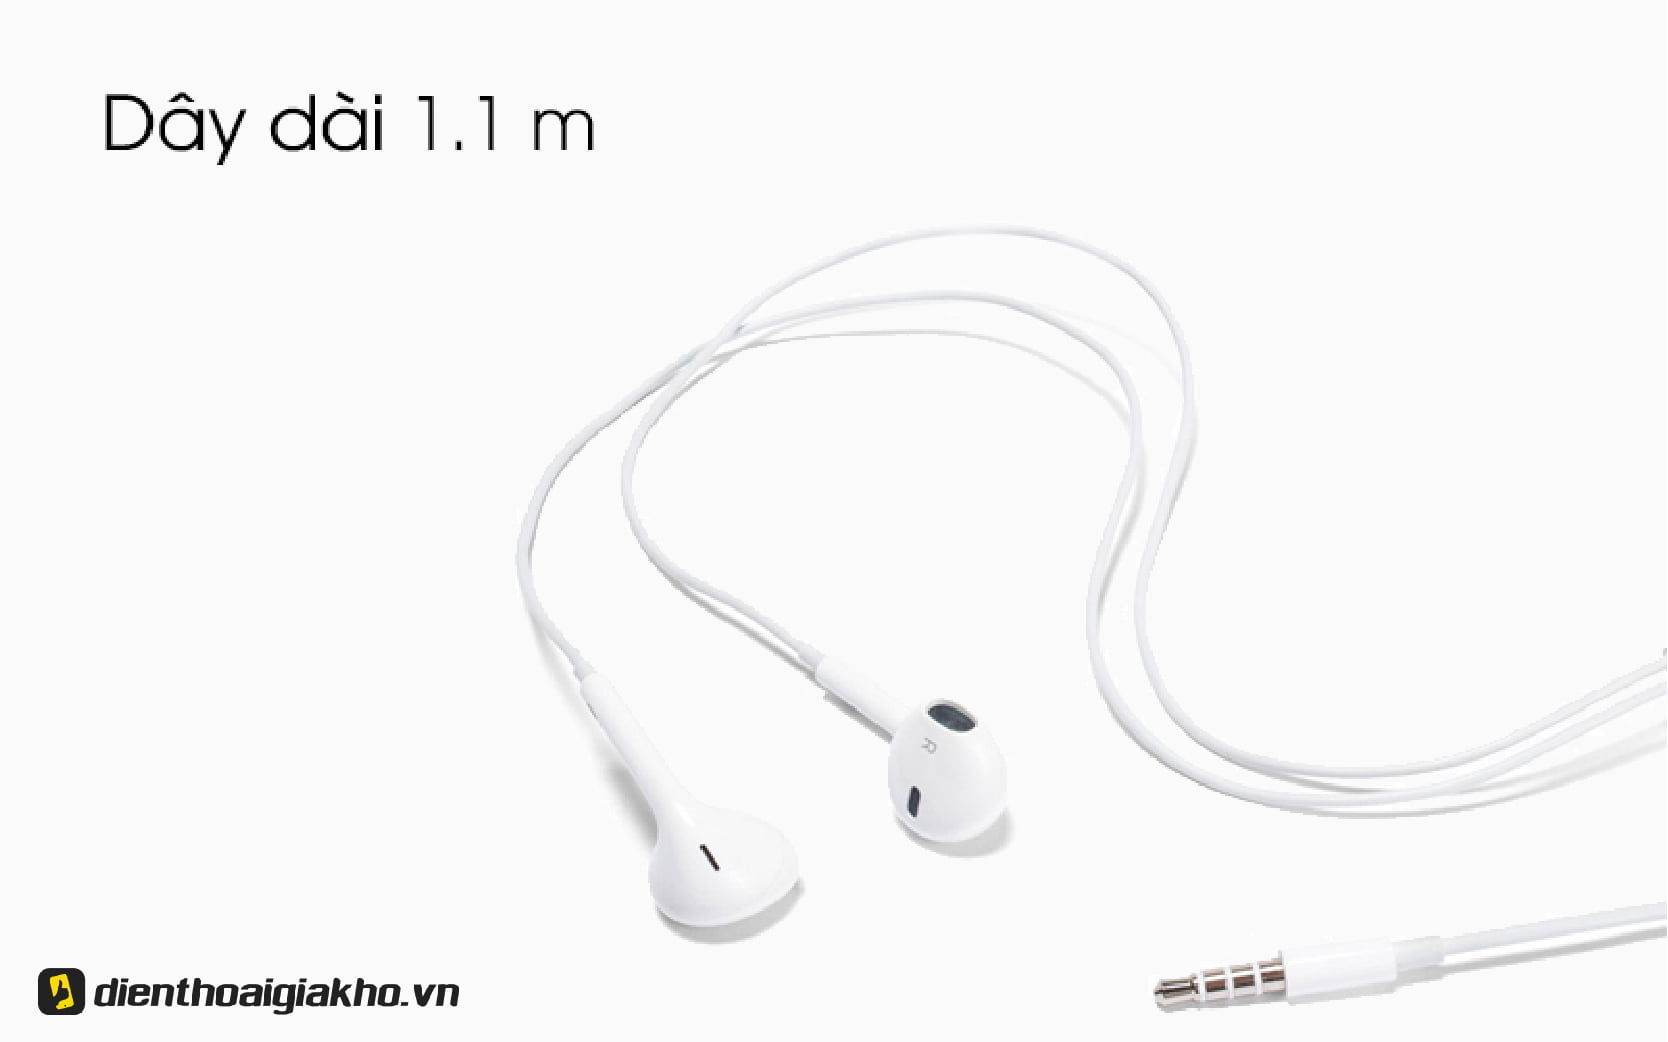 Tai nghe Apple Earpods 3.5mm có dây dài 1.1m